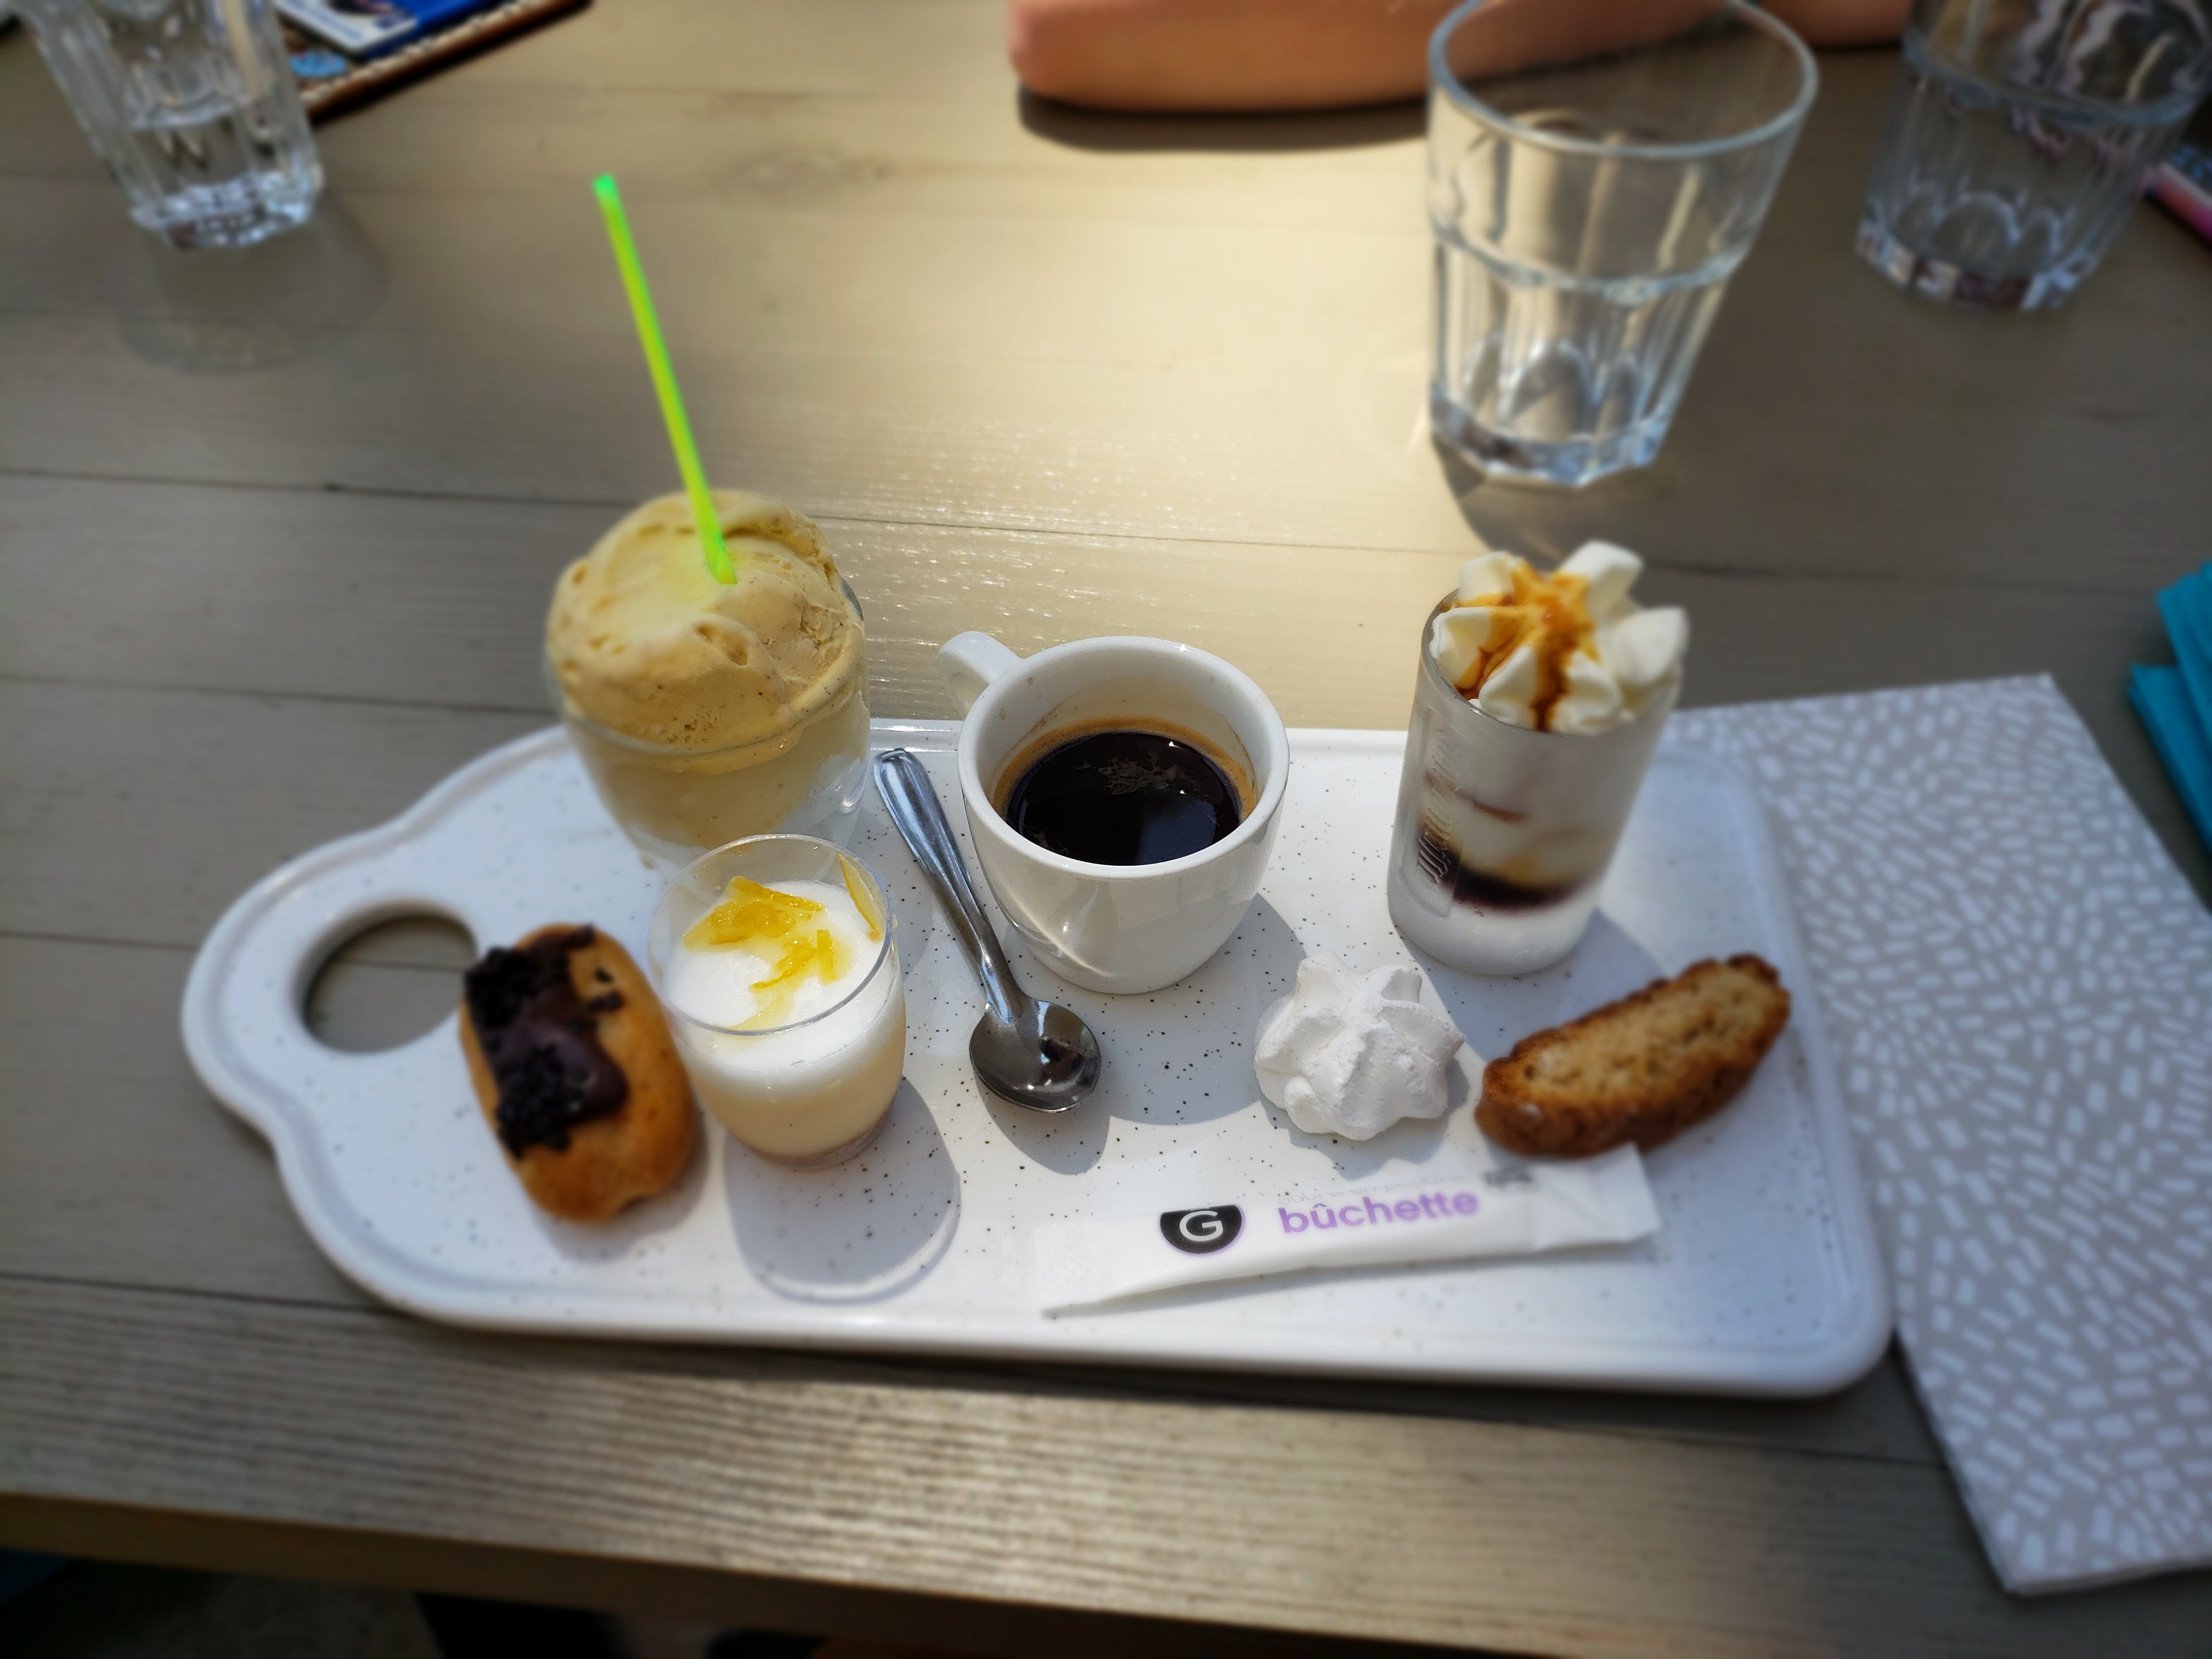 A “ café gourmand” dessert plate.